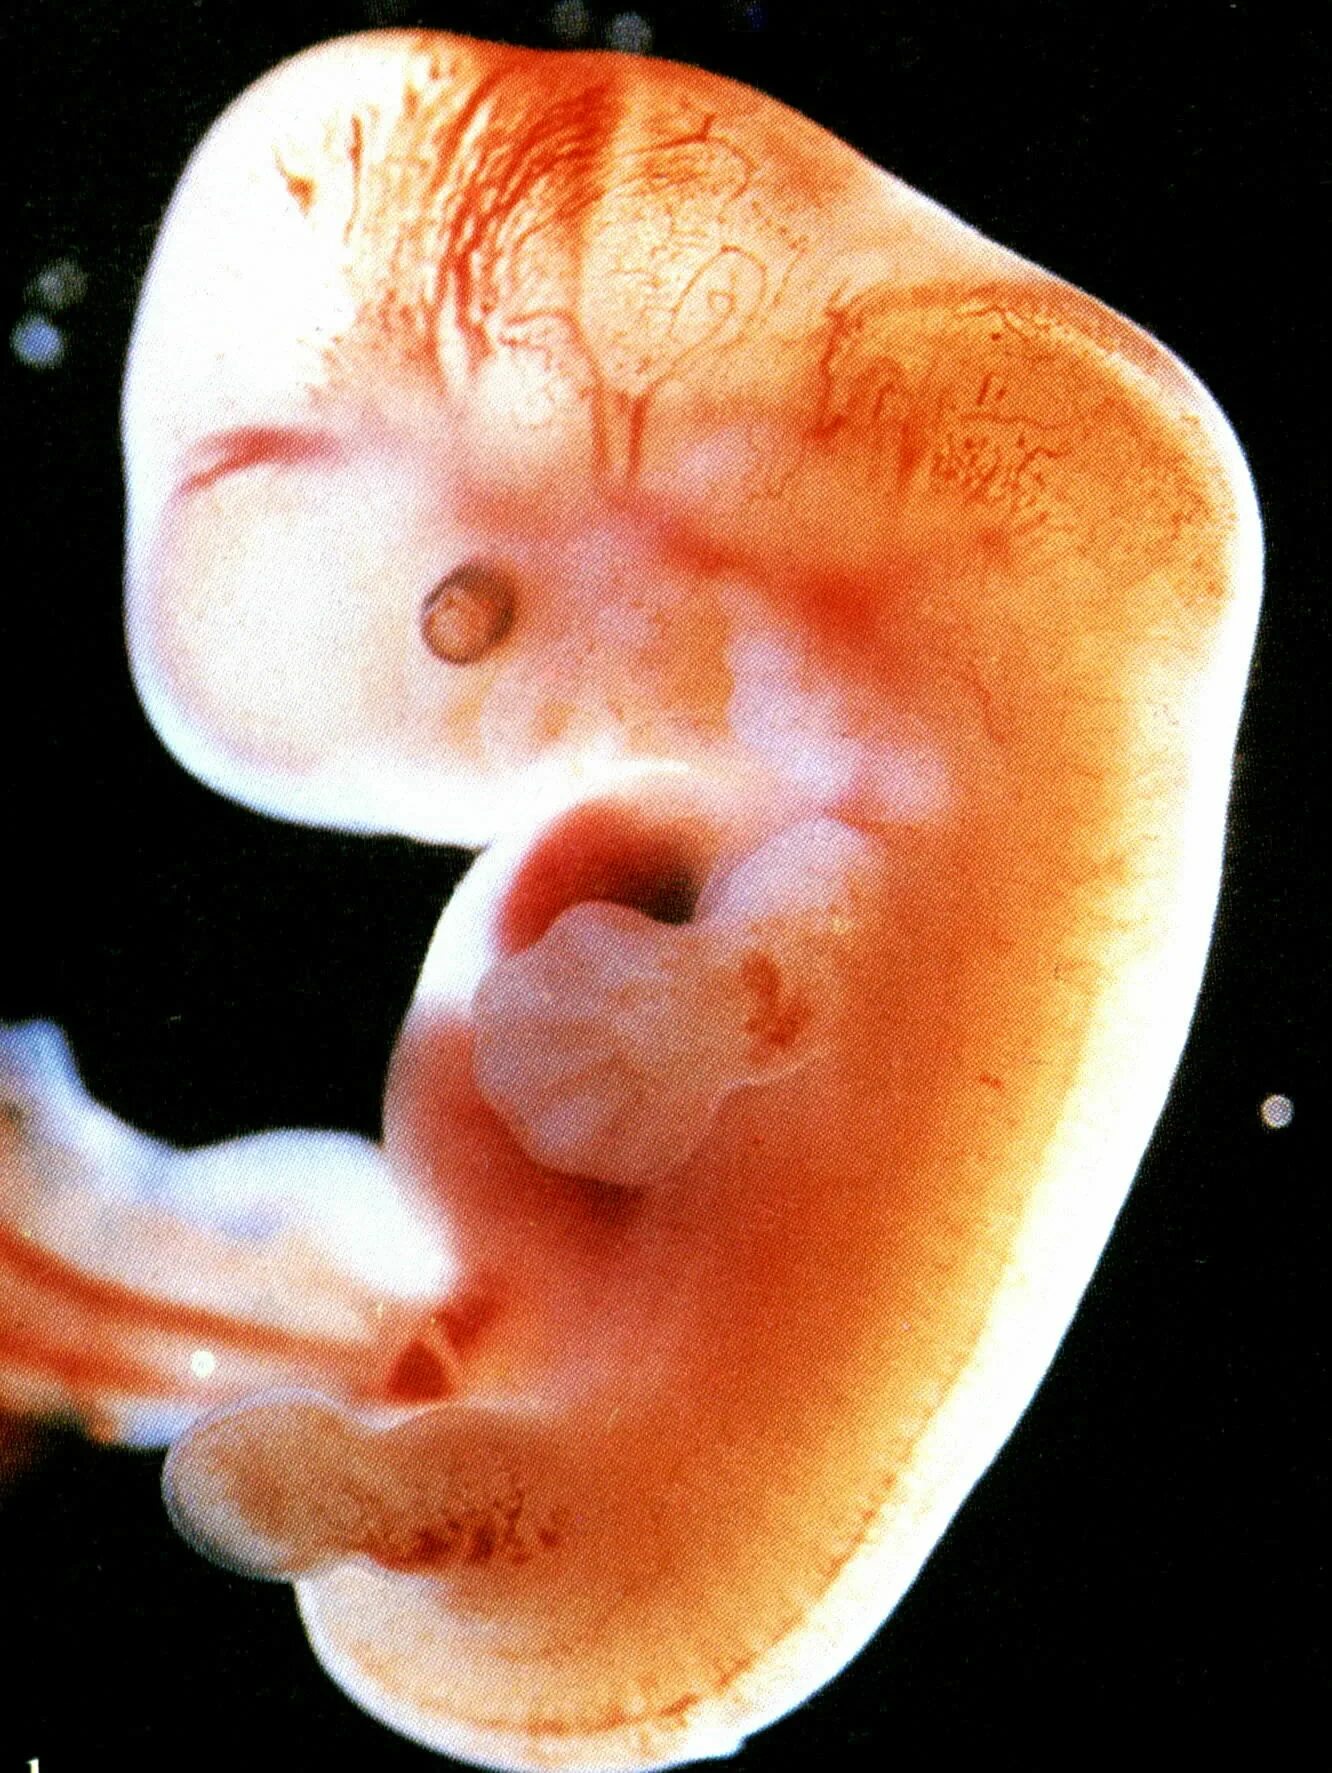 5 акушерская неделя. Эмбрион на 4-5 неделе беременности. Зародыш 3-4 недели беременности. Эмбрион на 4 неделе беременности. Зародыш на 5 неделе беременности.